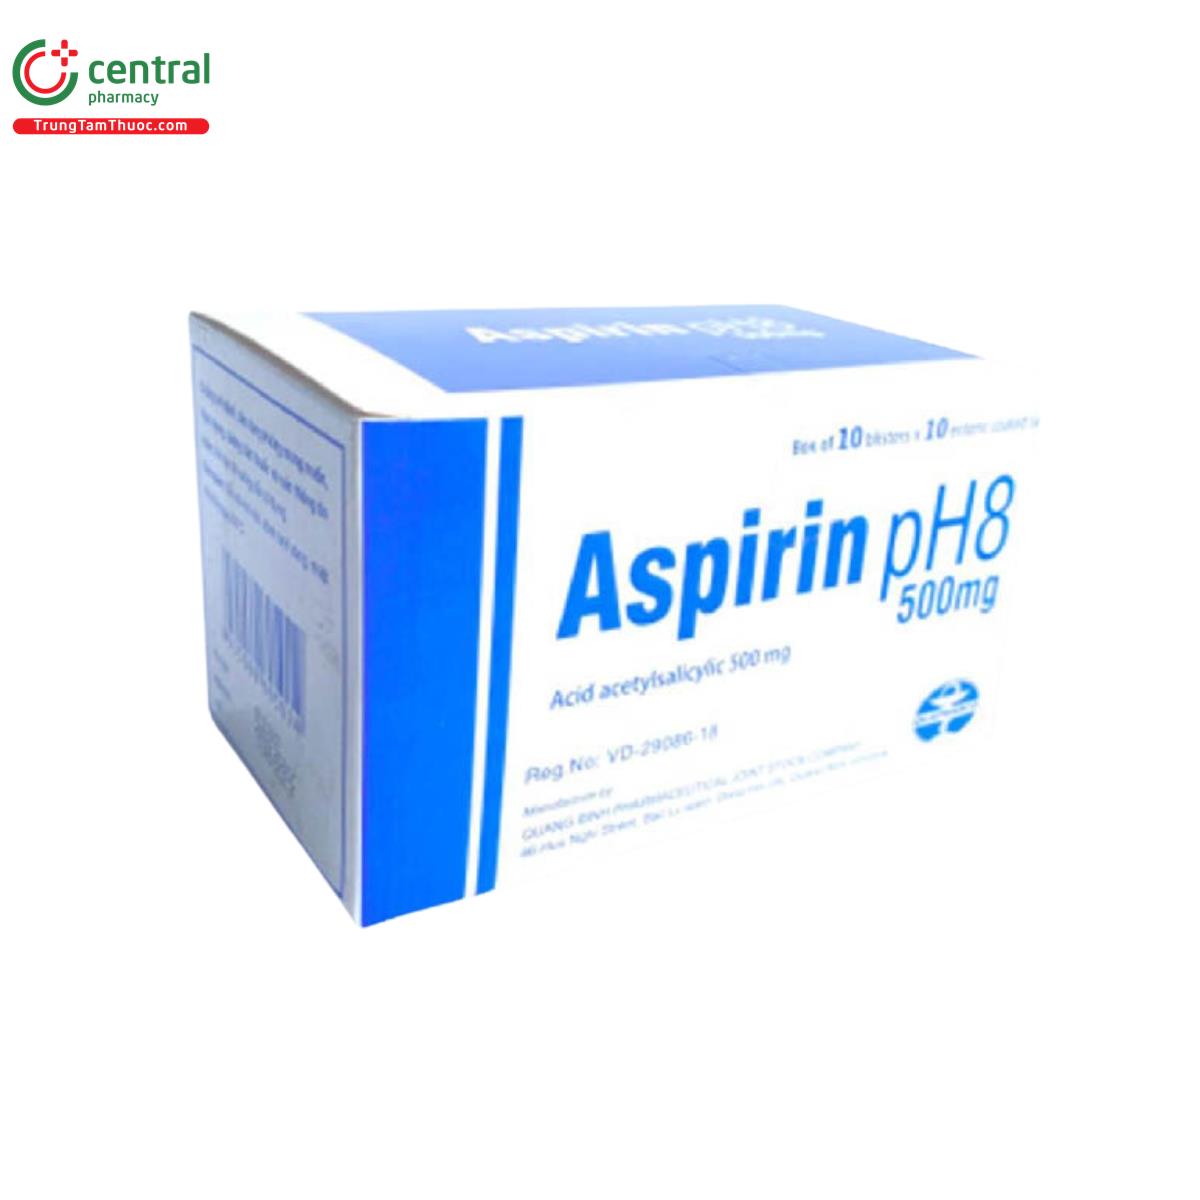 aspirin ph8 500mg quapharco 4 E1128